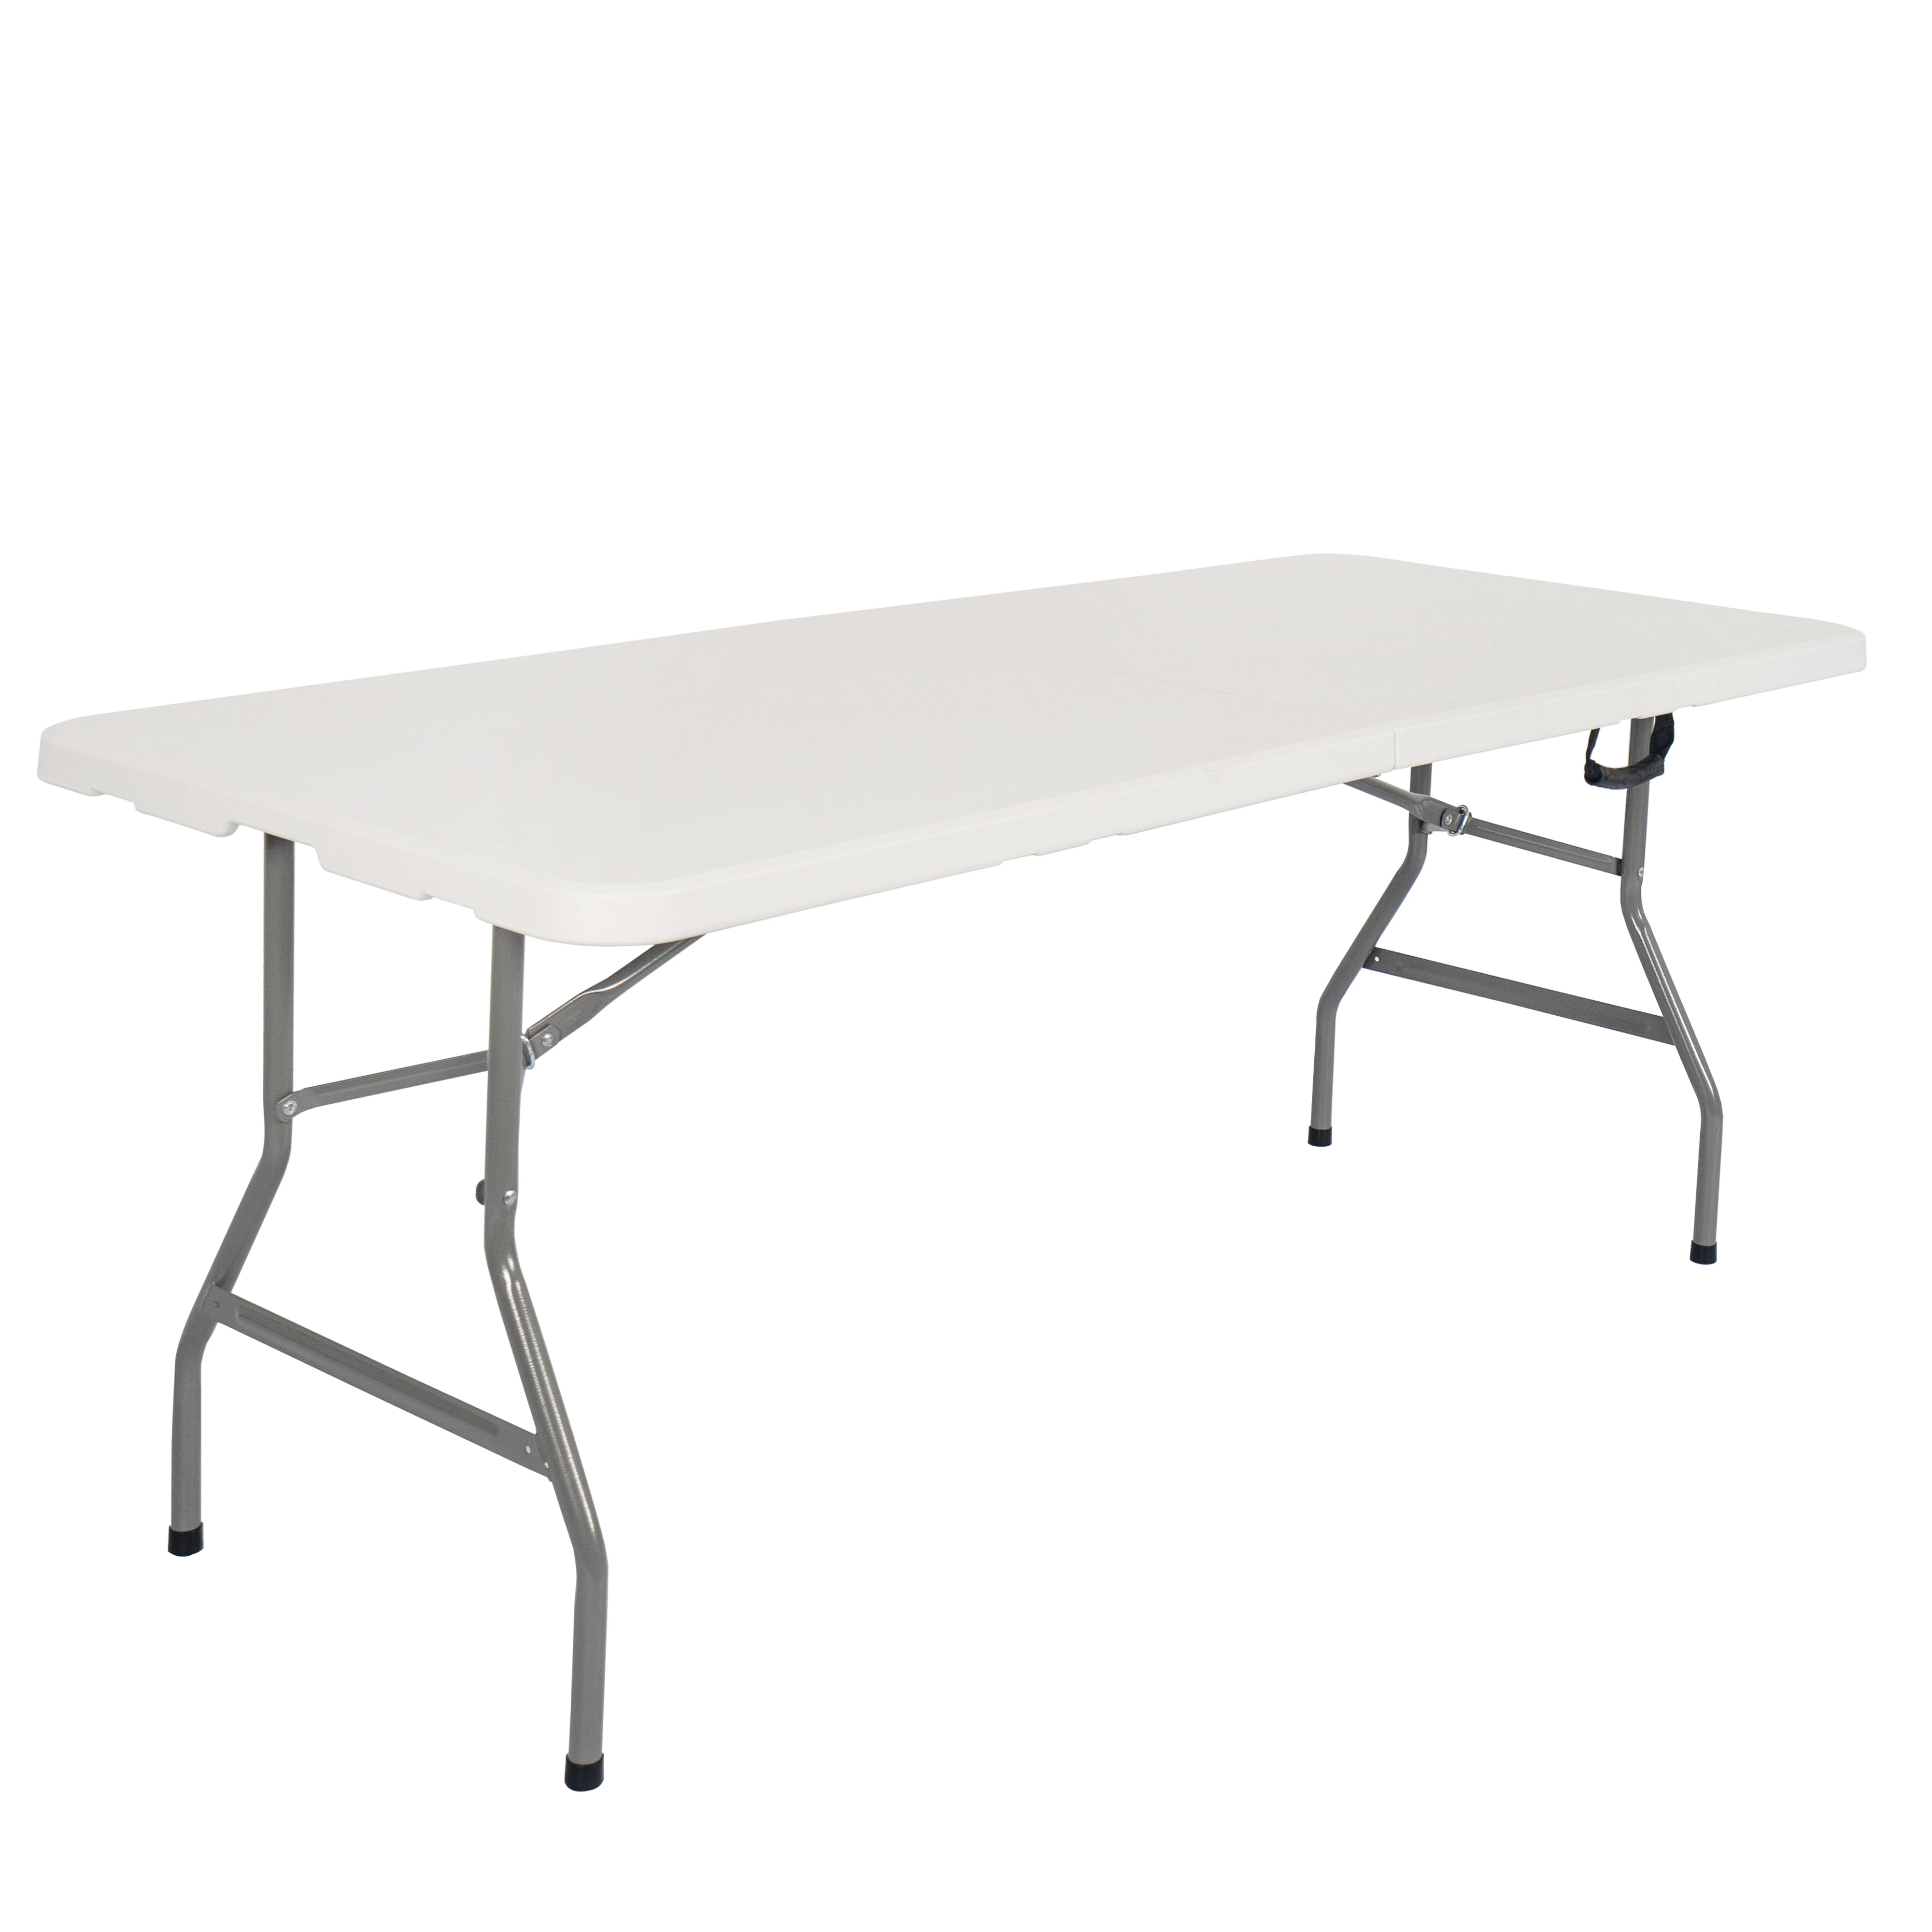 Дешевый белый пластиковый складной стол, 6 футов, 180 см, портативный стол для кемпинга по стандарту en581